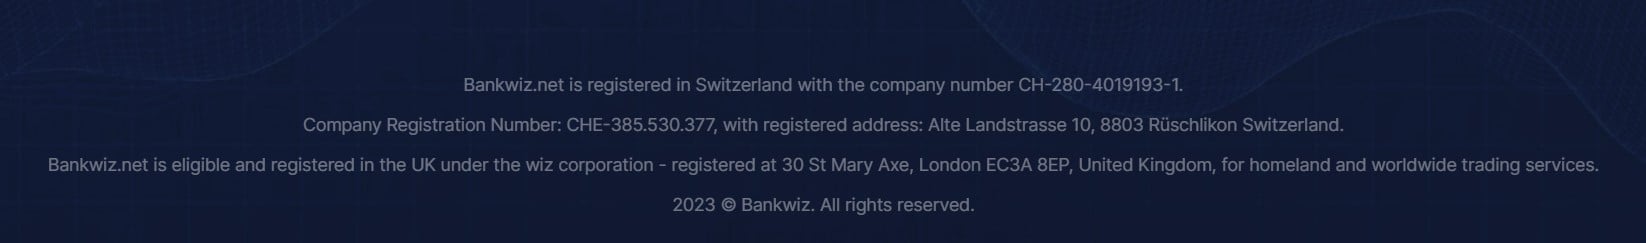 Banner de pie de página de color azul oscuro que muestra información regulatoria de Bankwiz.net, indicando el registro en Suiza y el Reino Unido, con números y direcciones de empresas proporcionados, enfatizando sus servicios comerciales globales para 2023. Se incluye una declaración de todos los derechos reservados.